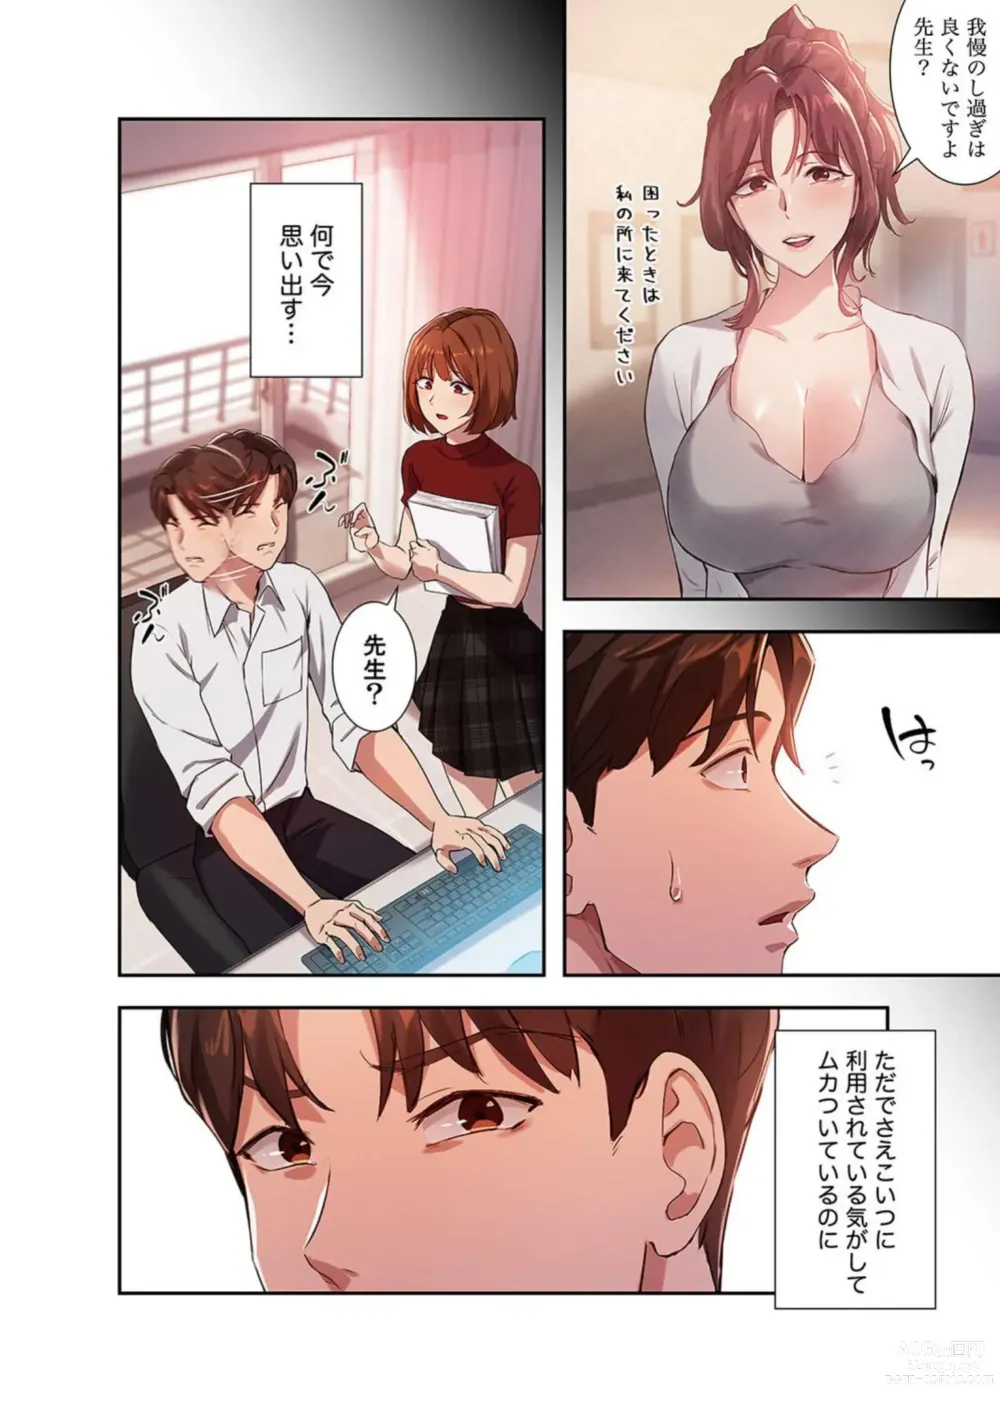 Page 112 of manga Hatachi 03